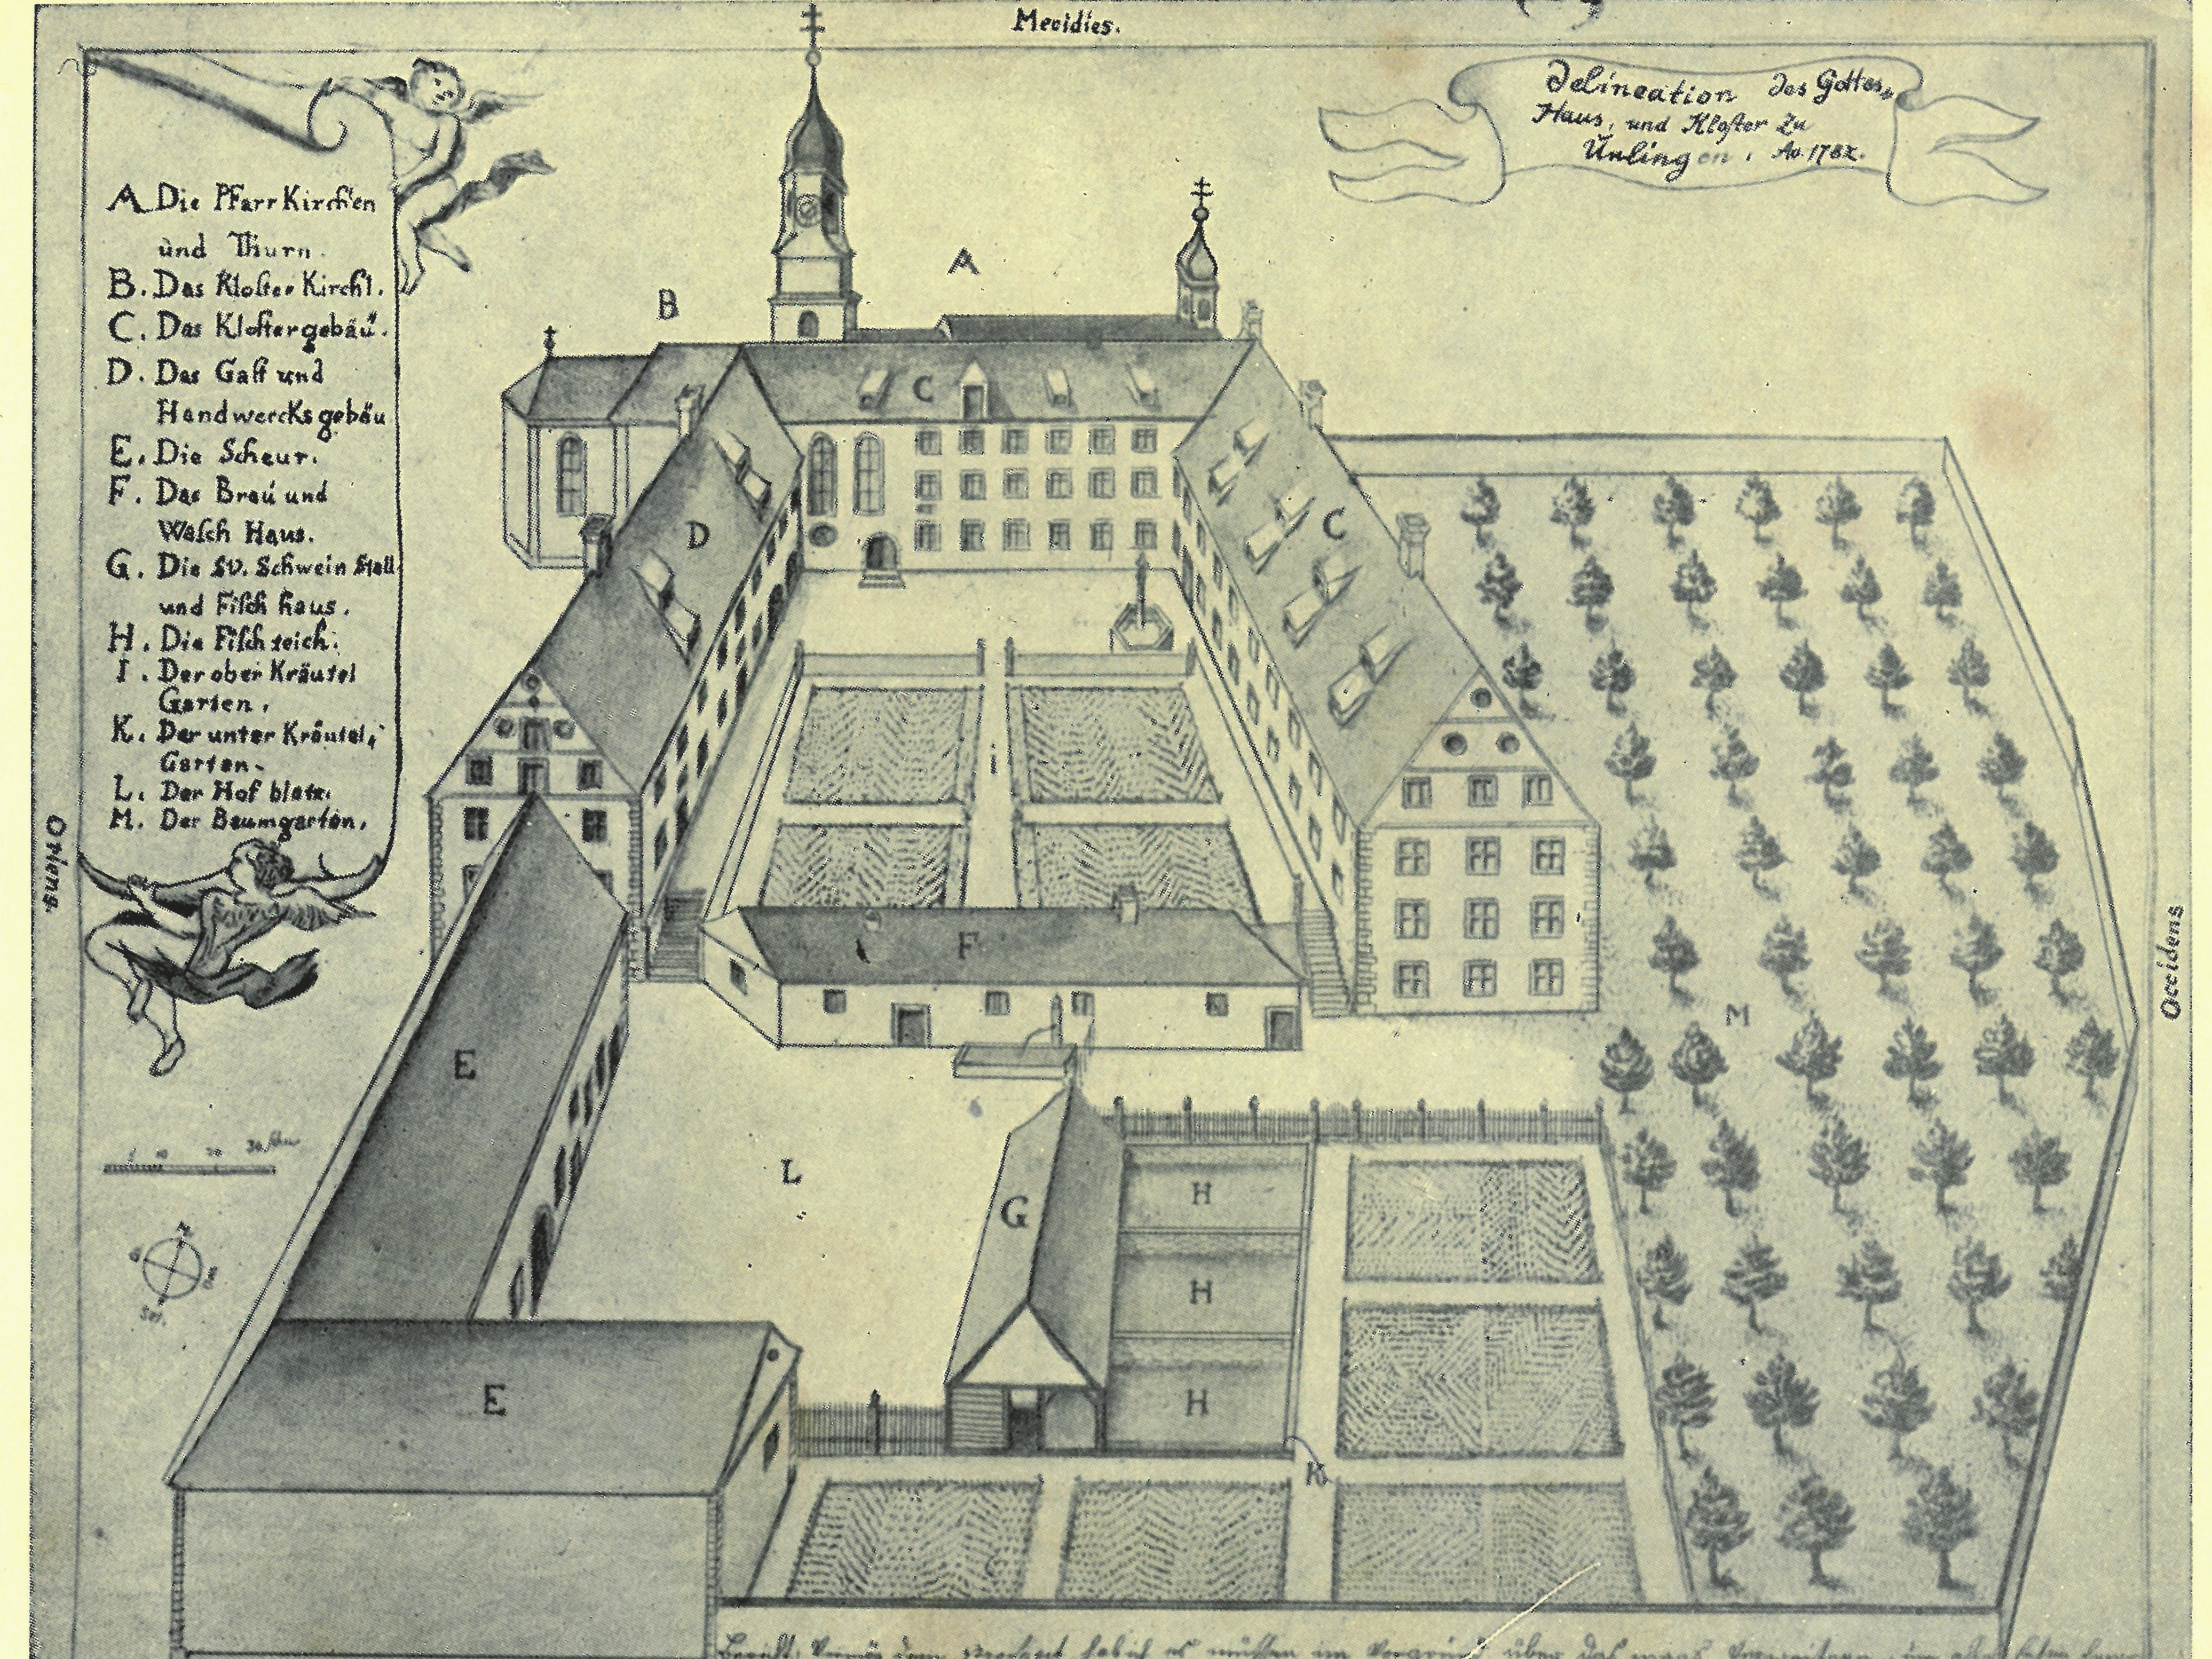  Kloster Unlingen im Jahr 1782 